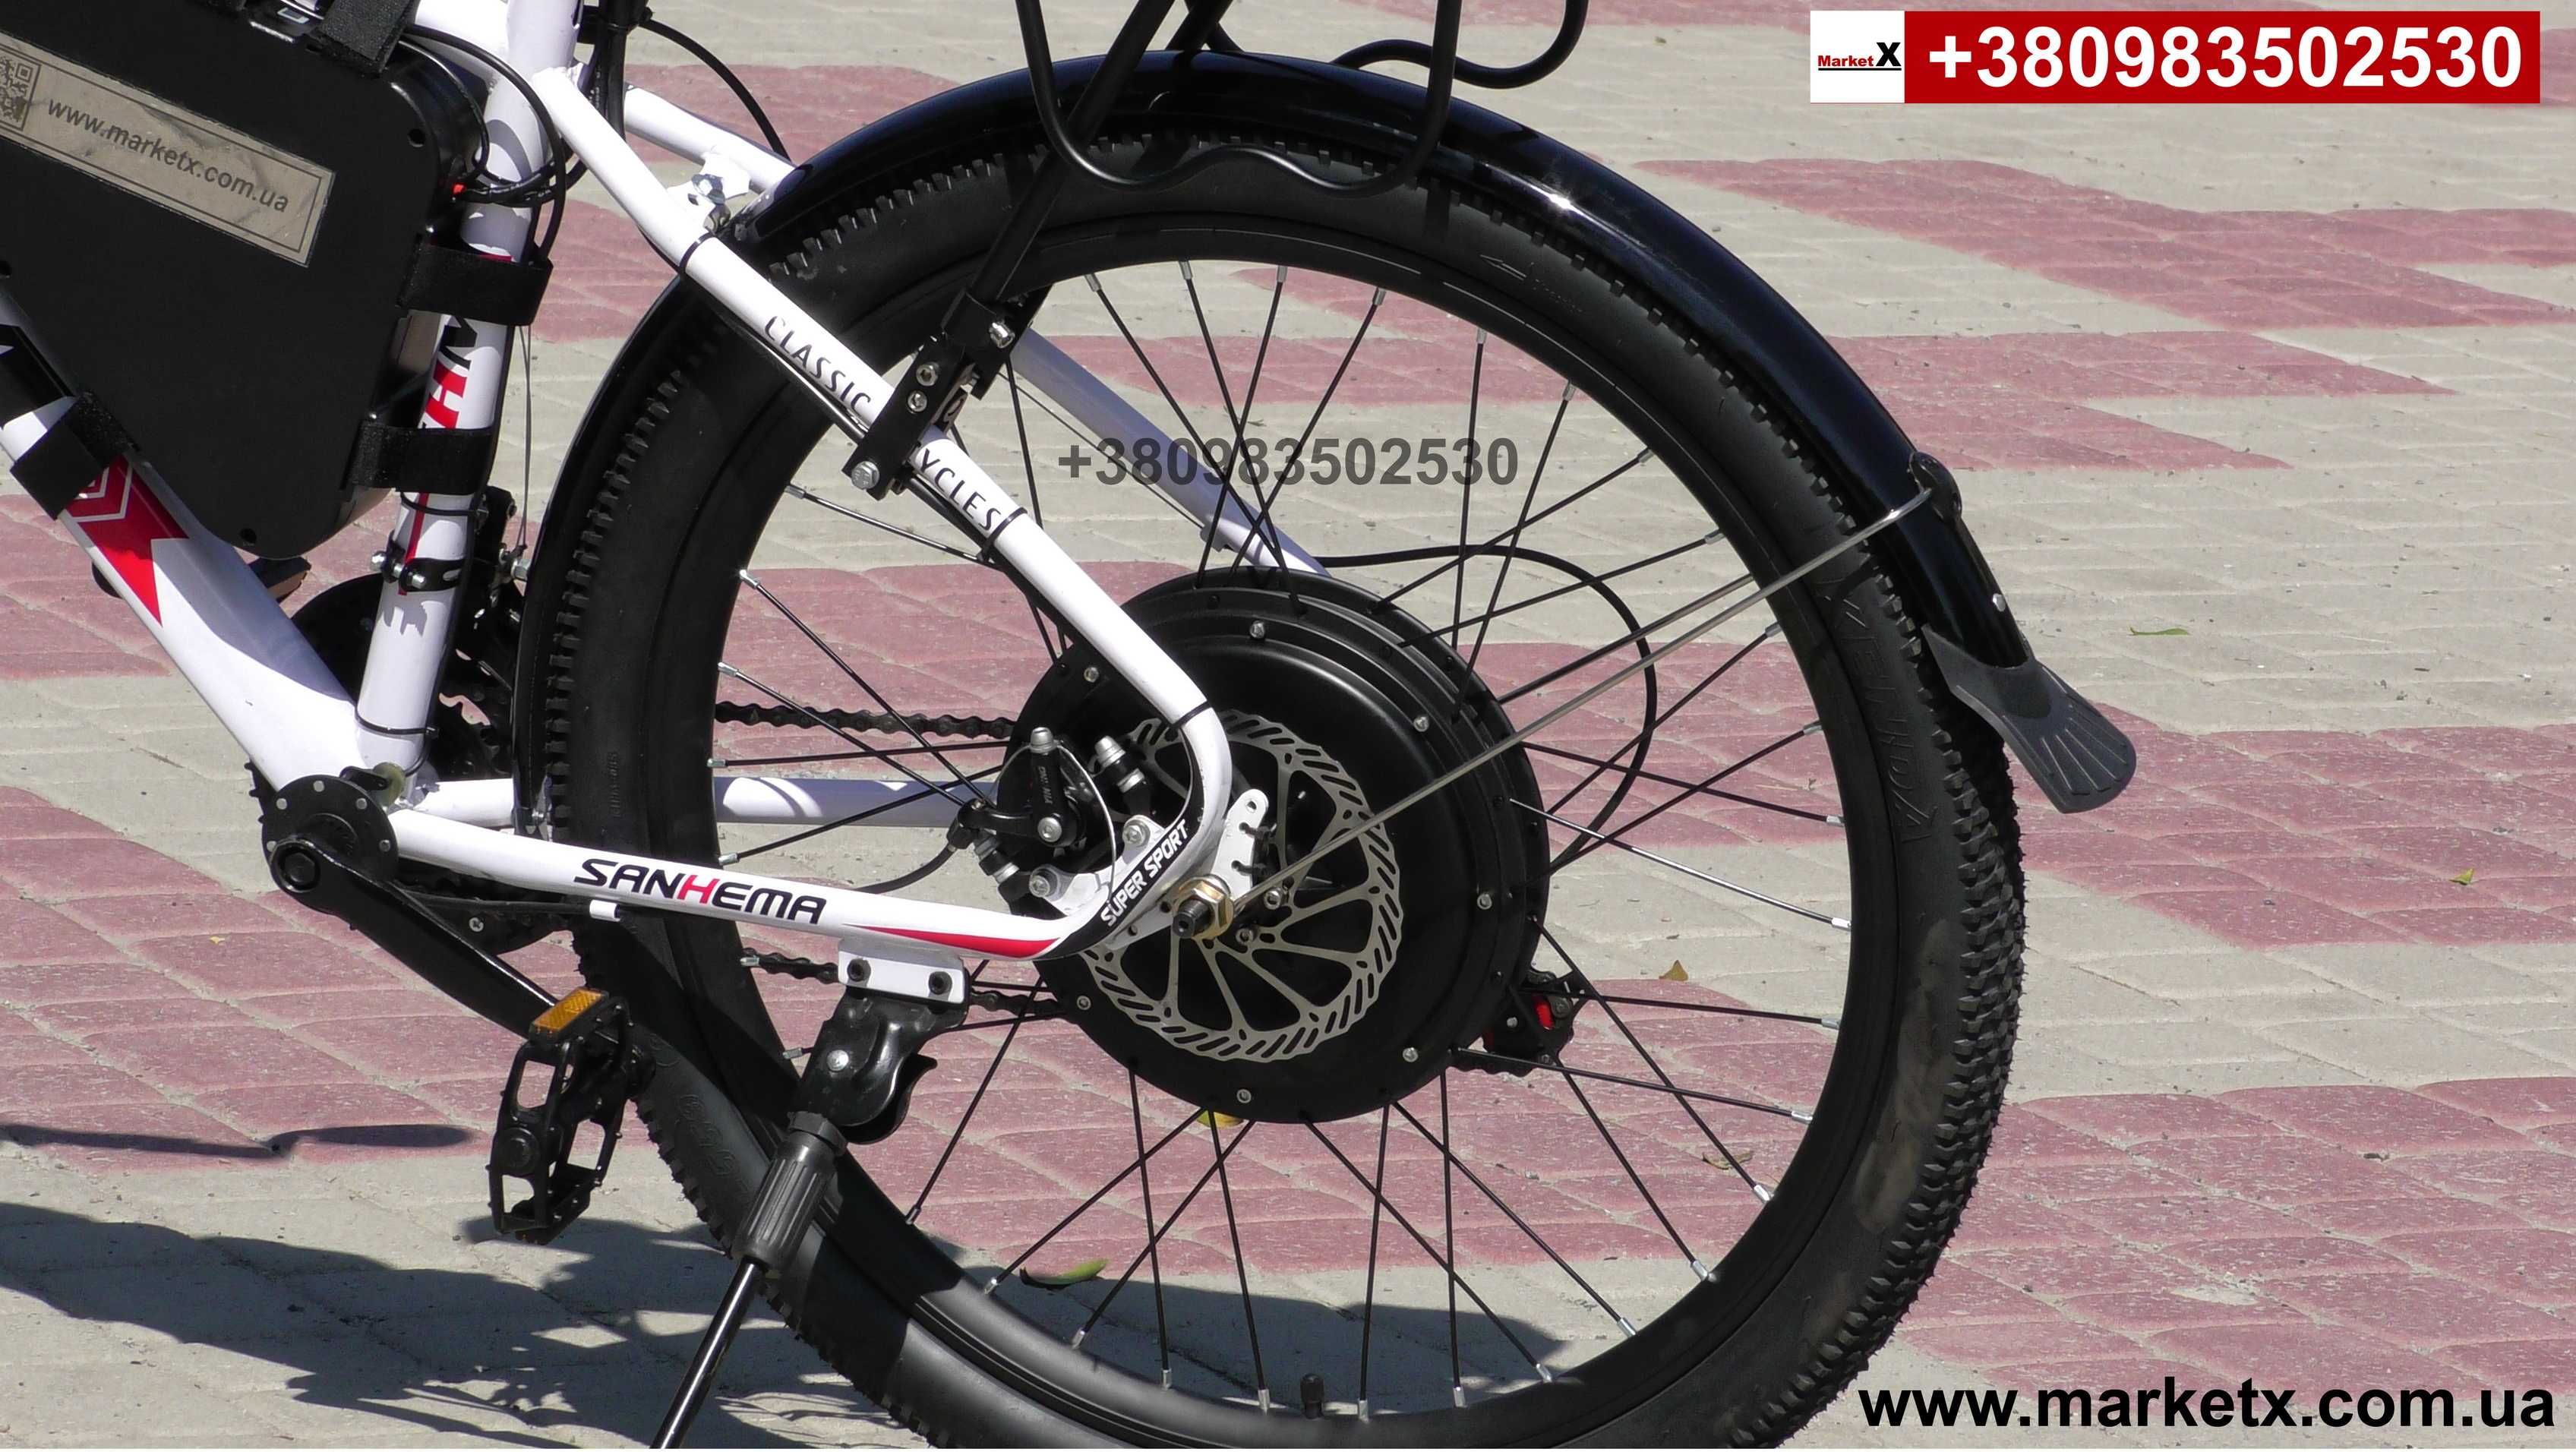 Полноразмерные вело крылья щитки на велосипед 26 дюймов электровелосип